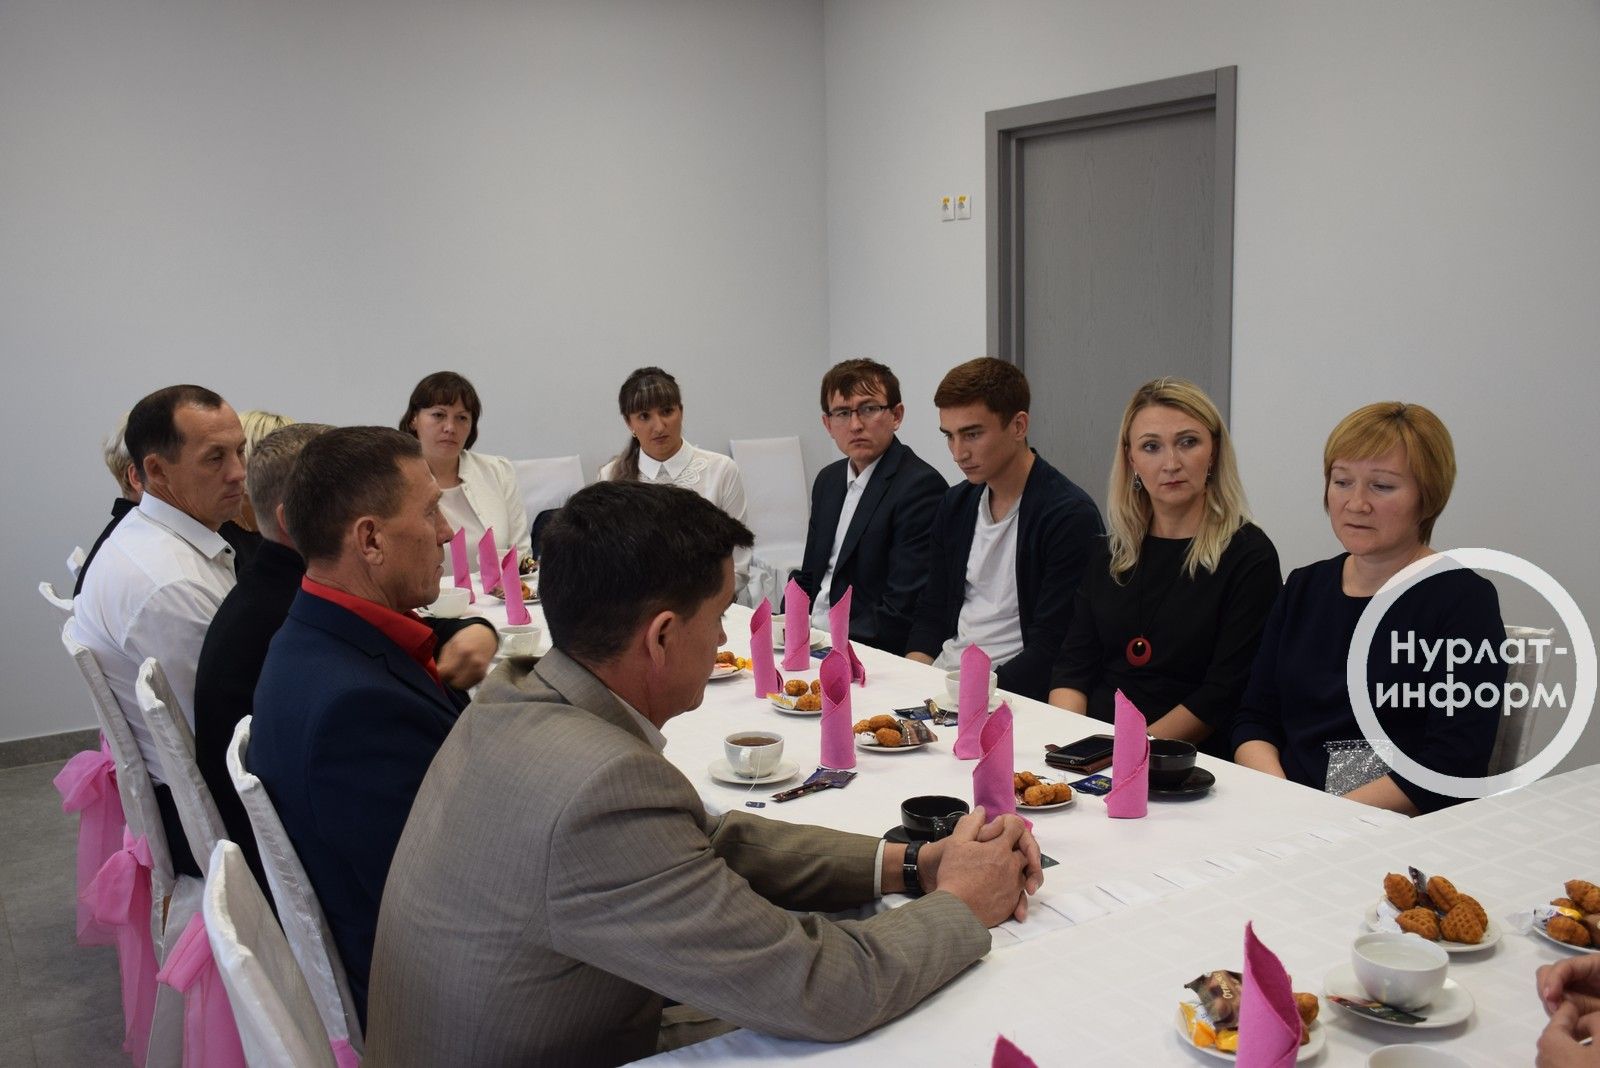 Накануне Дня учителя преподаватели физкультуры Нурлата встретились с депутатом Госдумы России